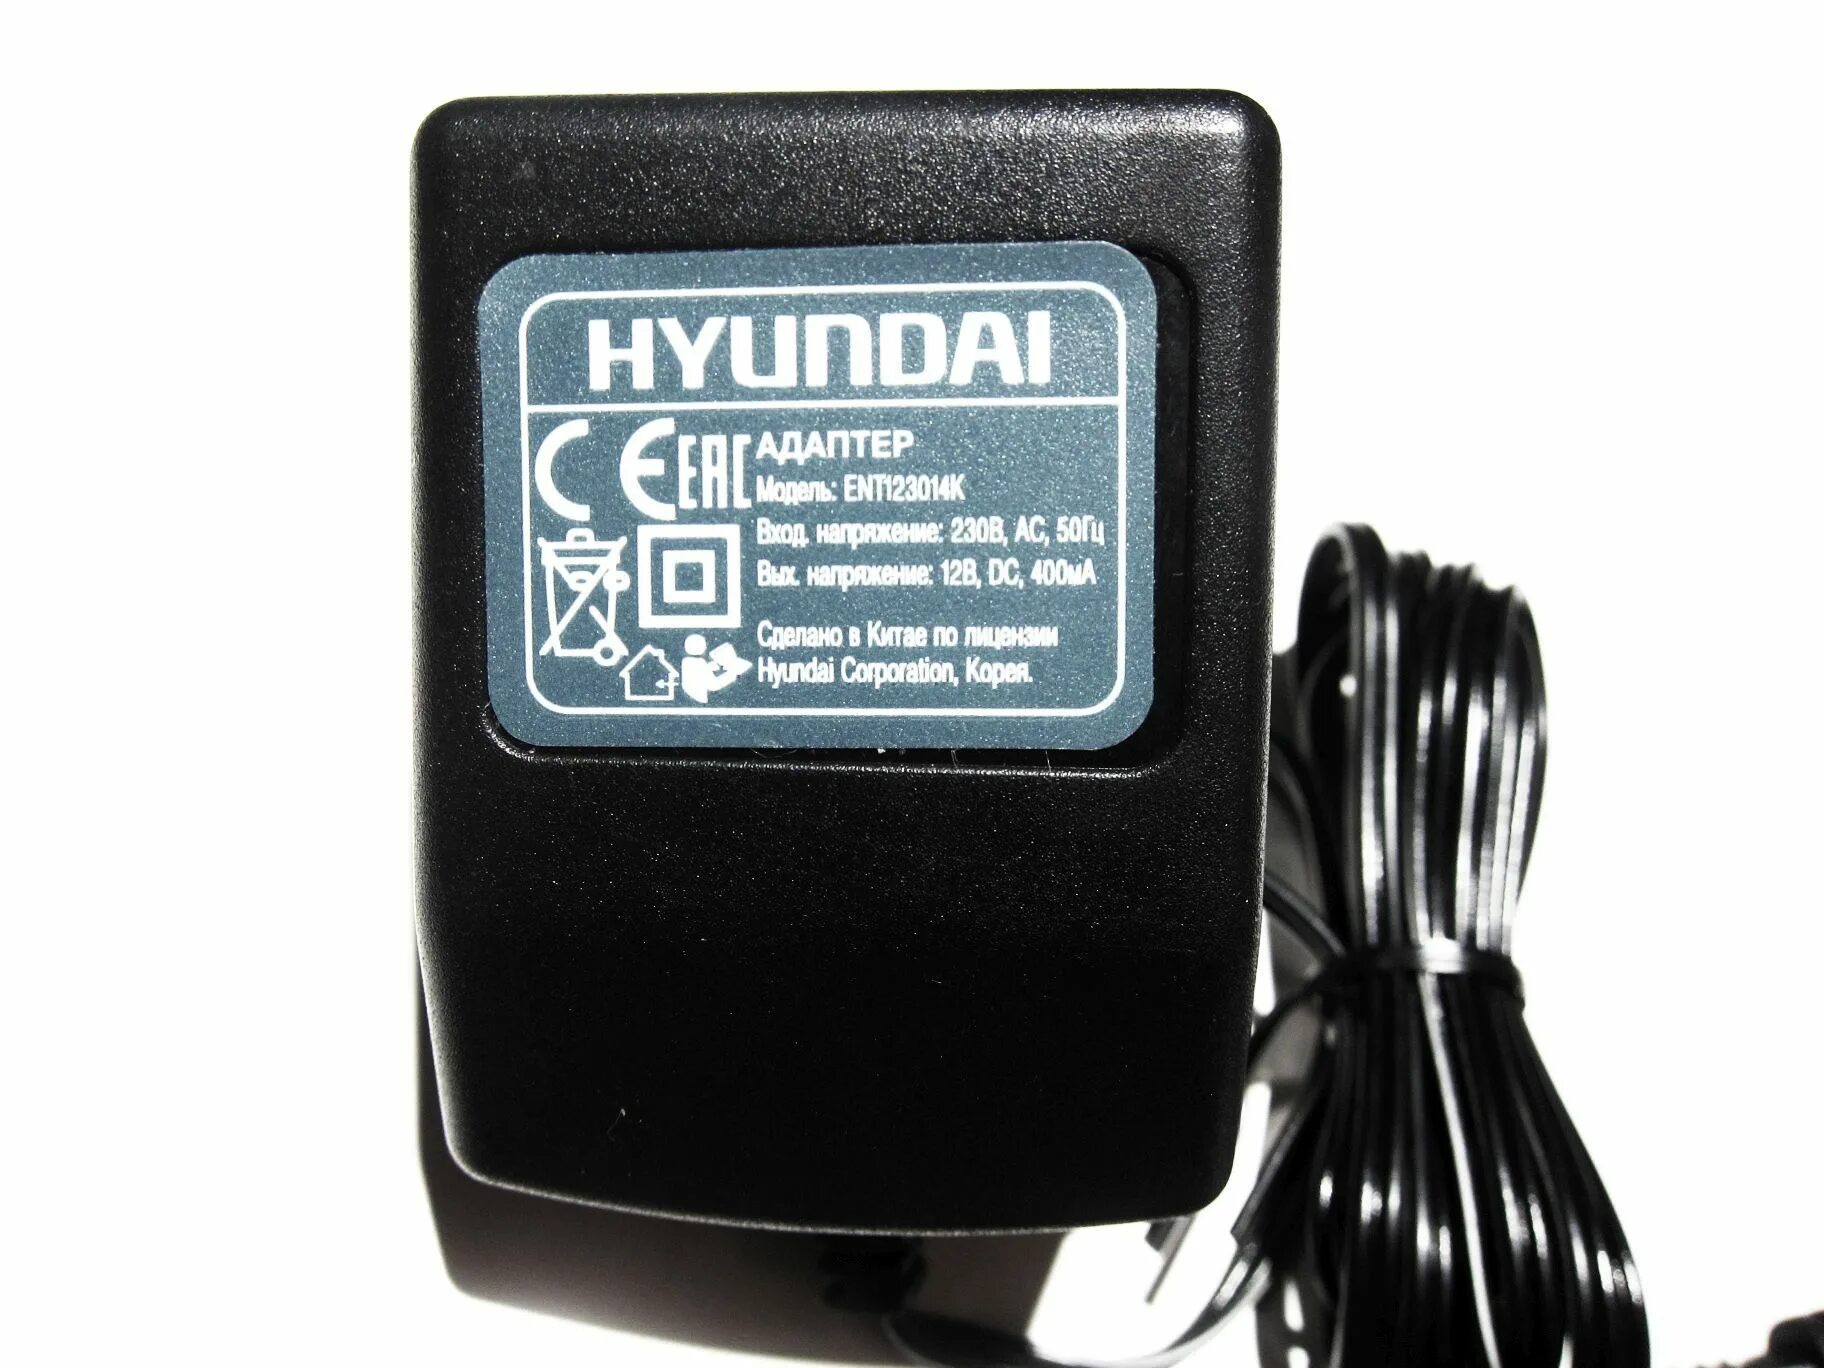 Hyundai 12v. Зарядное Hyundai ent123014k. Ent123015k зарядное Hyundai. Зарядное для шуруповерта Hyundai ent123014k. Зарядка для шуруповерта Hyundai a1201.